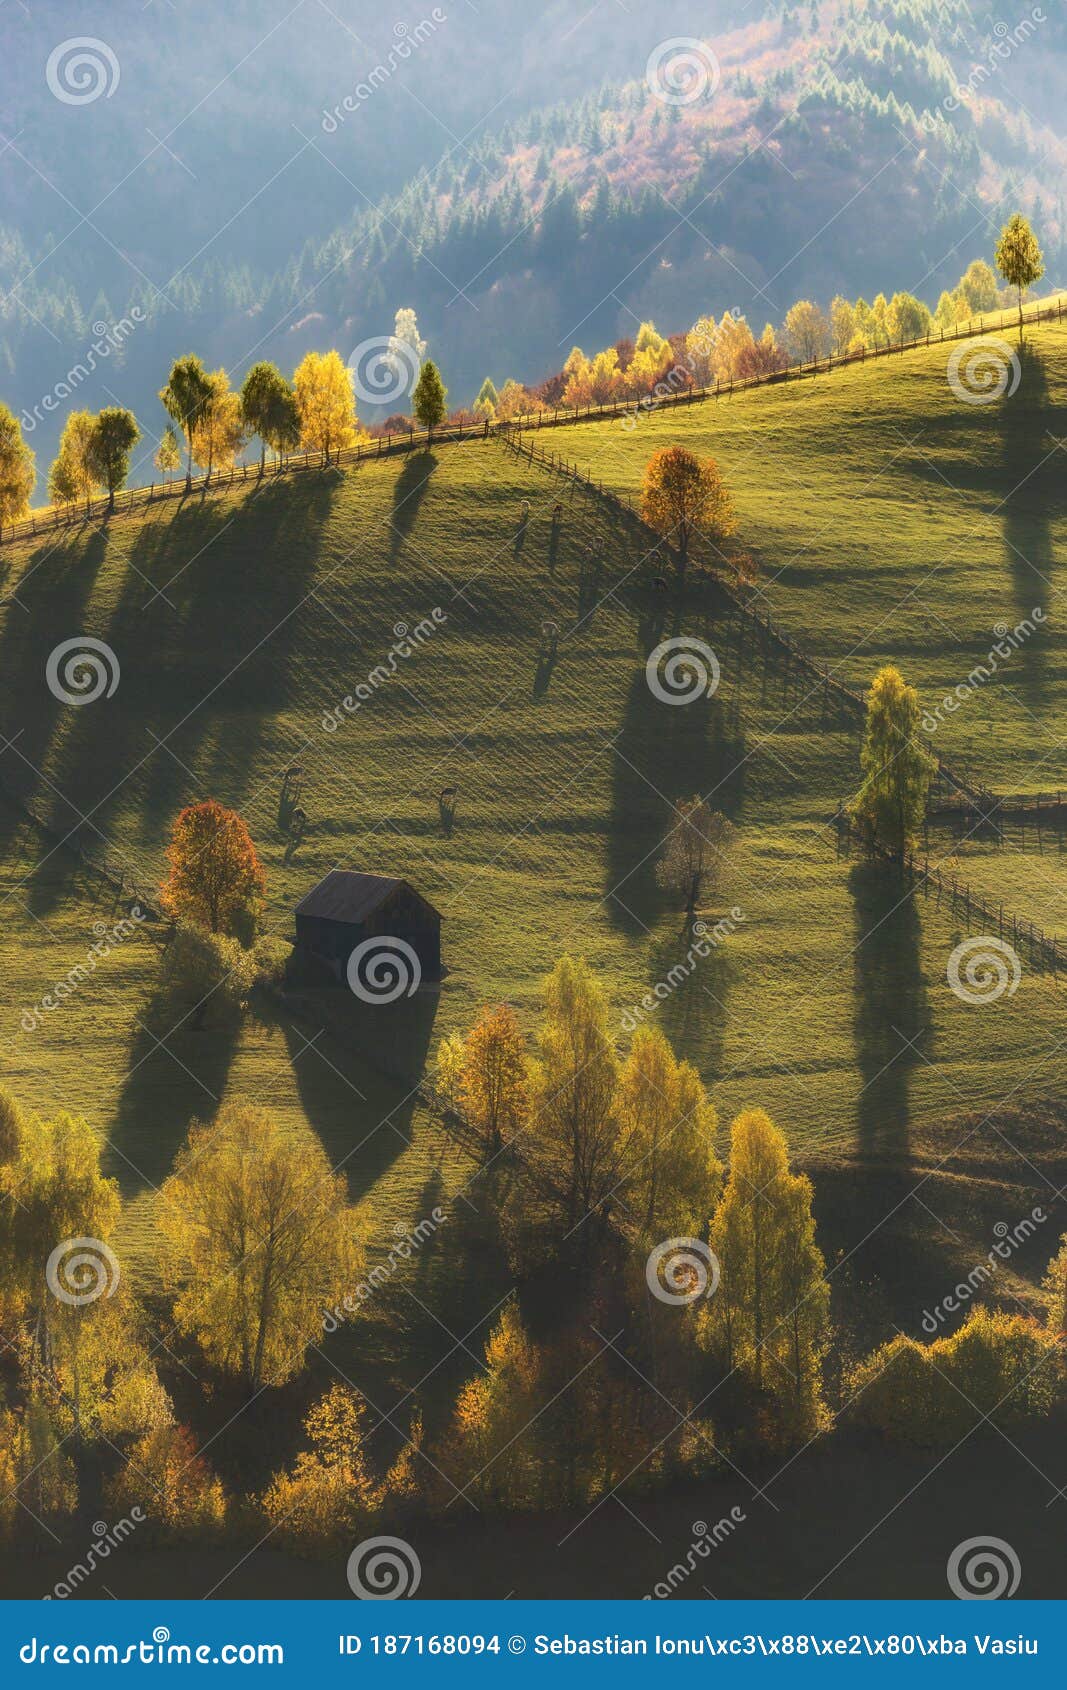 ÃËimon village, the comune of bran dracula`s place in the heart of transylvania and bucegi mountains in romania